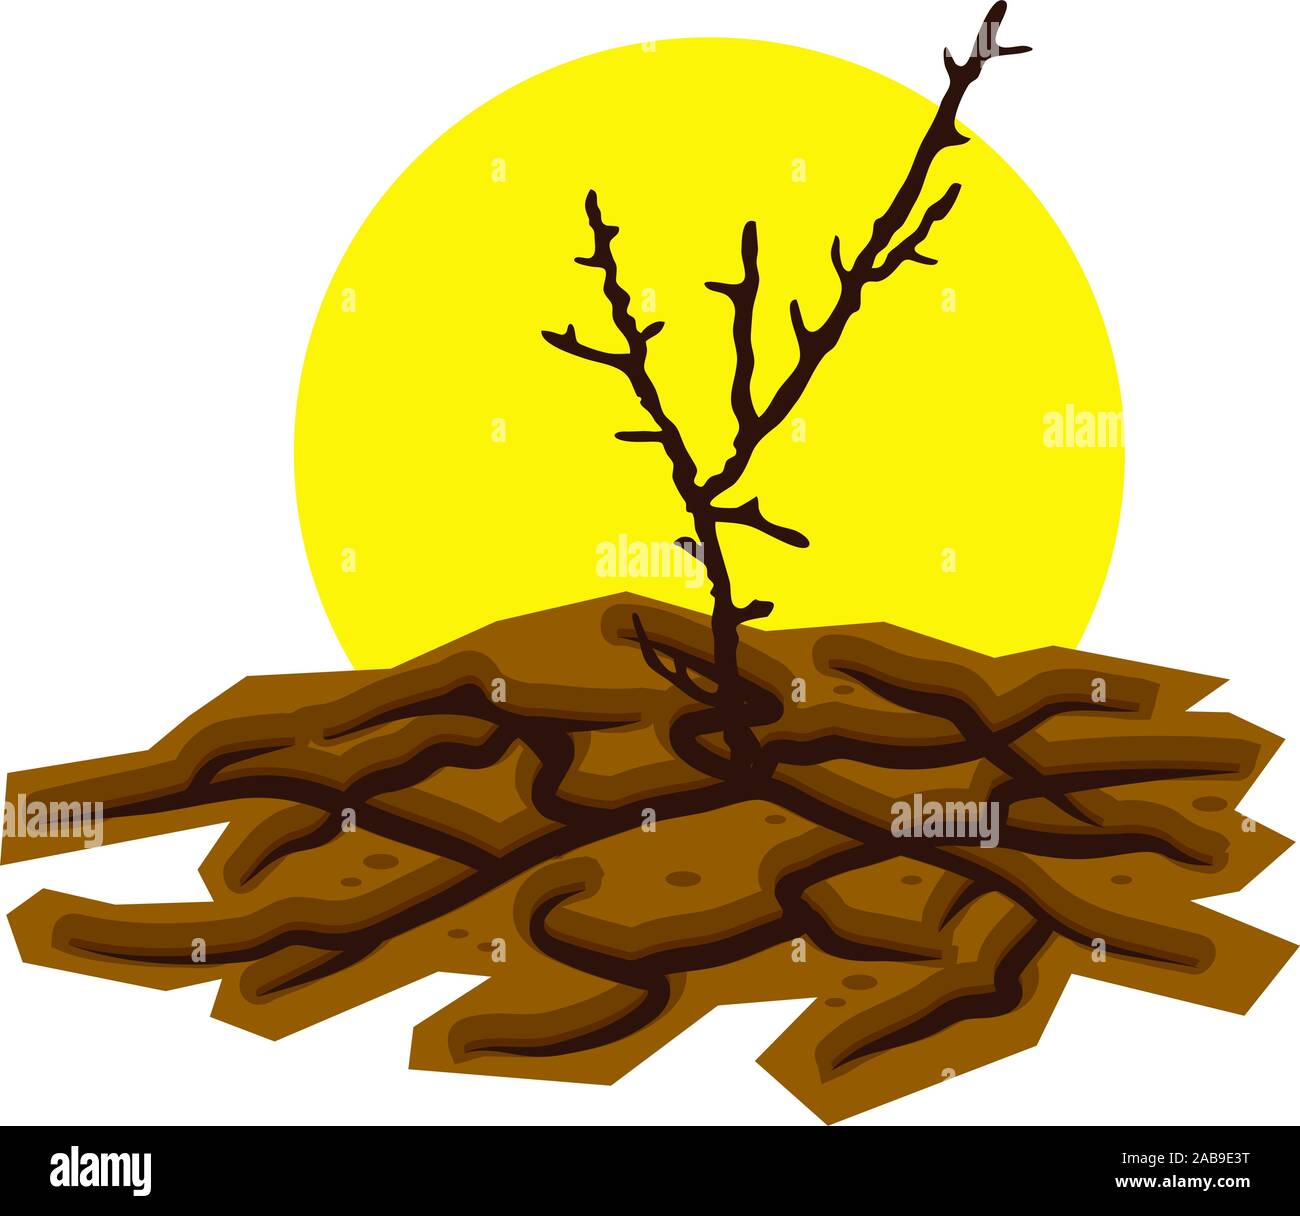 Illustrazione vettoriale di secco albero morto in secche e screpolate deserto e sole caldo il danneggiamento del suolo da siccità illustrazione. Icona del riscaldamento globale, climat Illustrazione Vettoriale